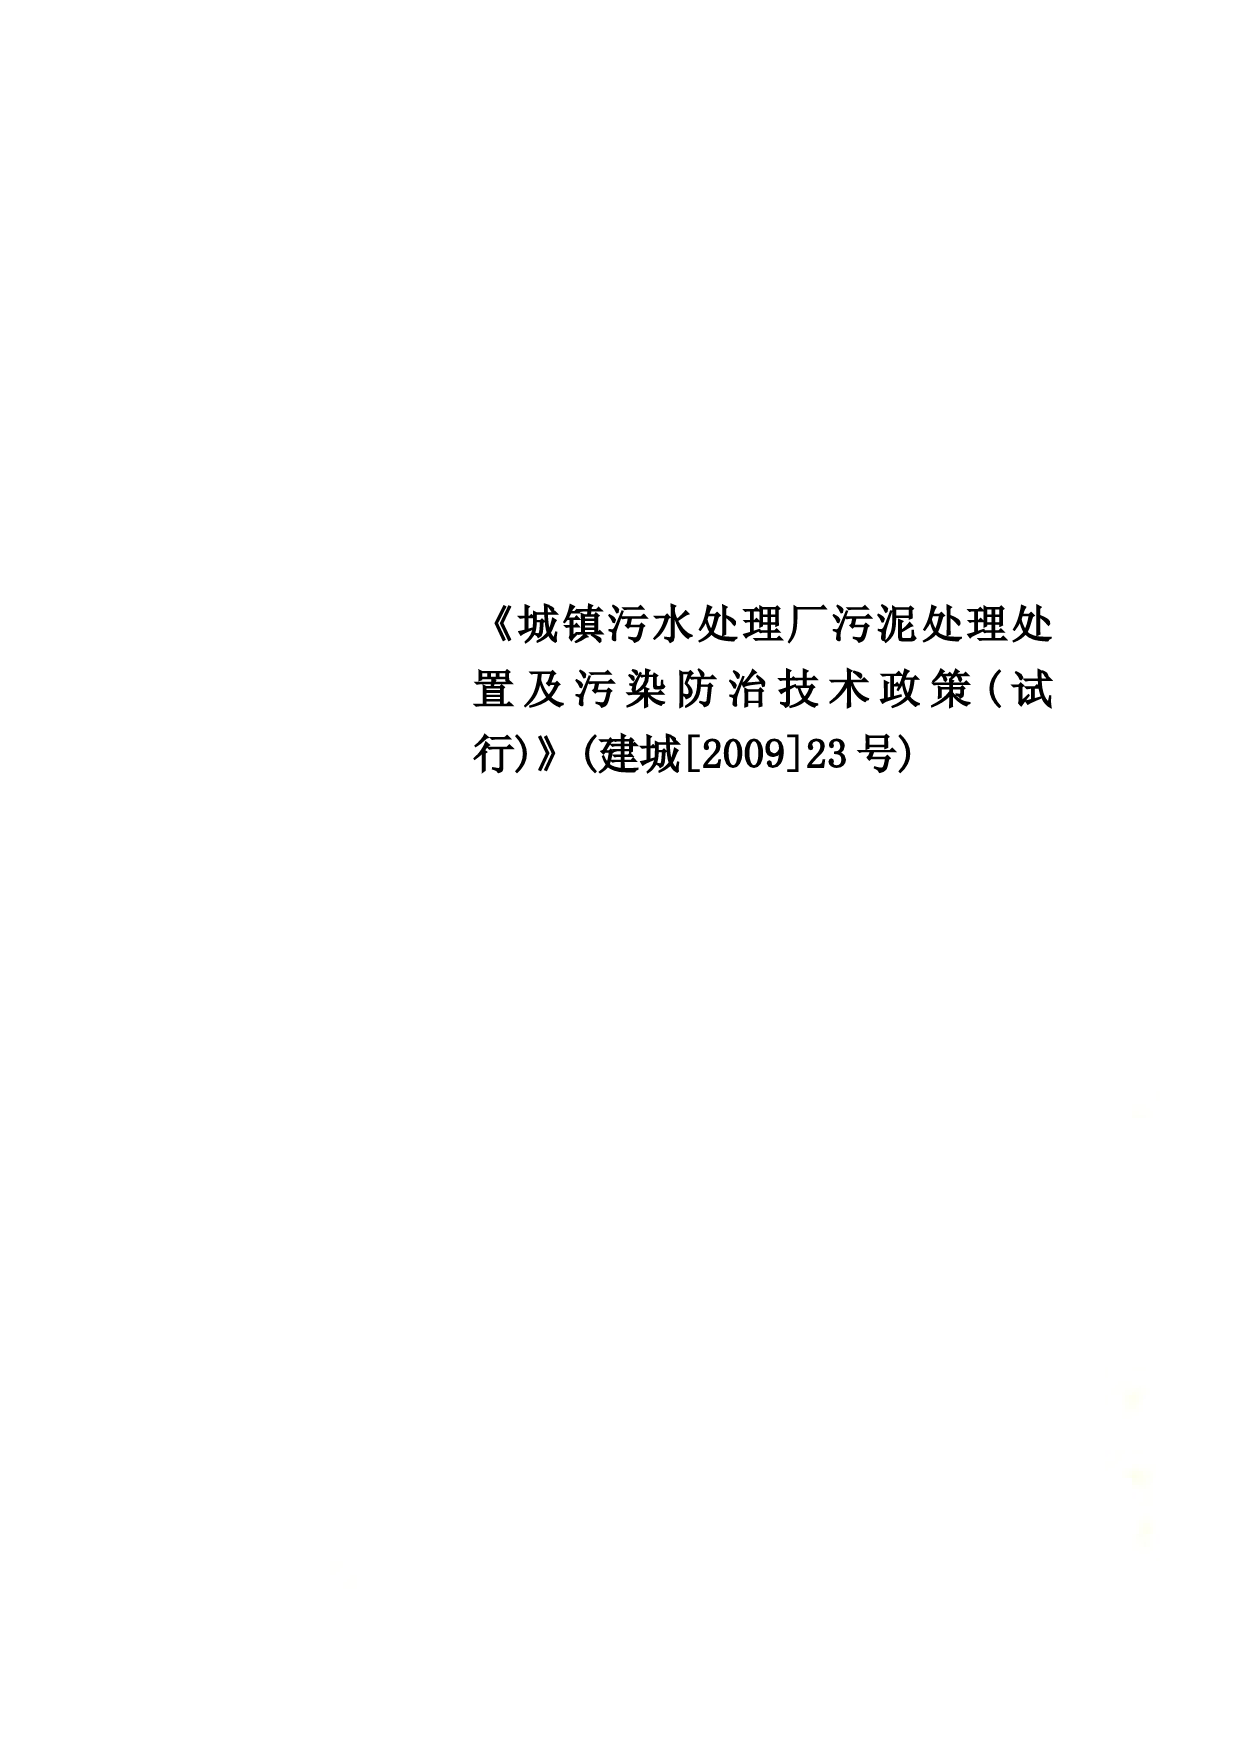 《城镇污水处理厂污泥处理处置及污染防治技术政策(试行)》(建城[2009]23号)